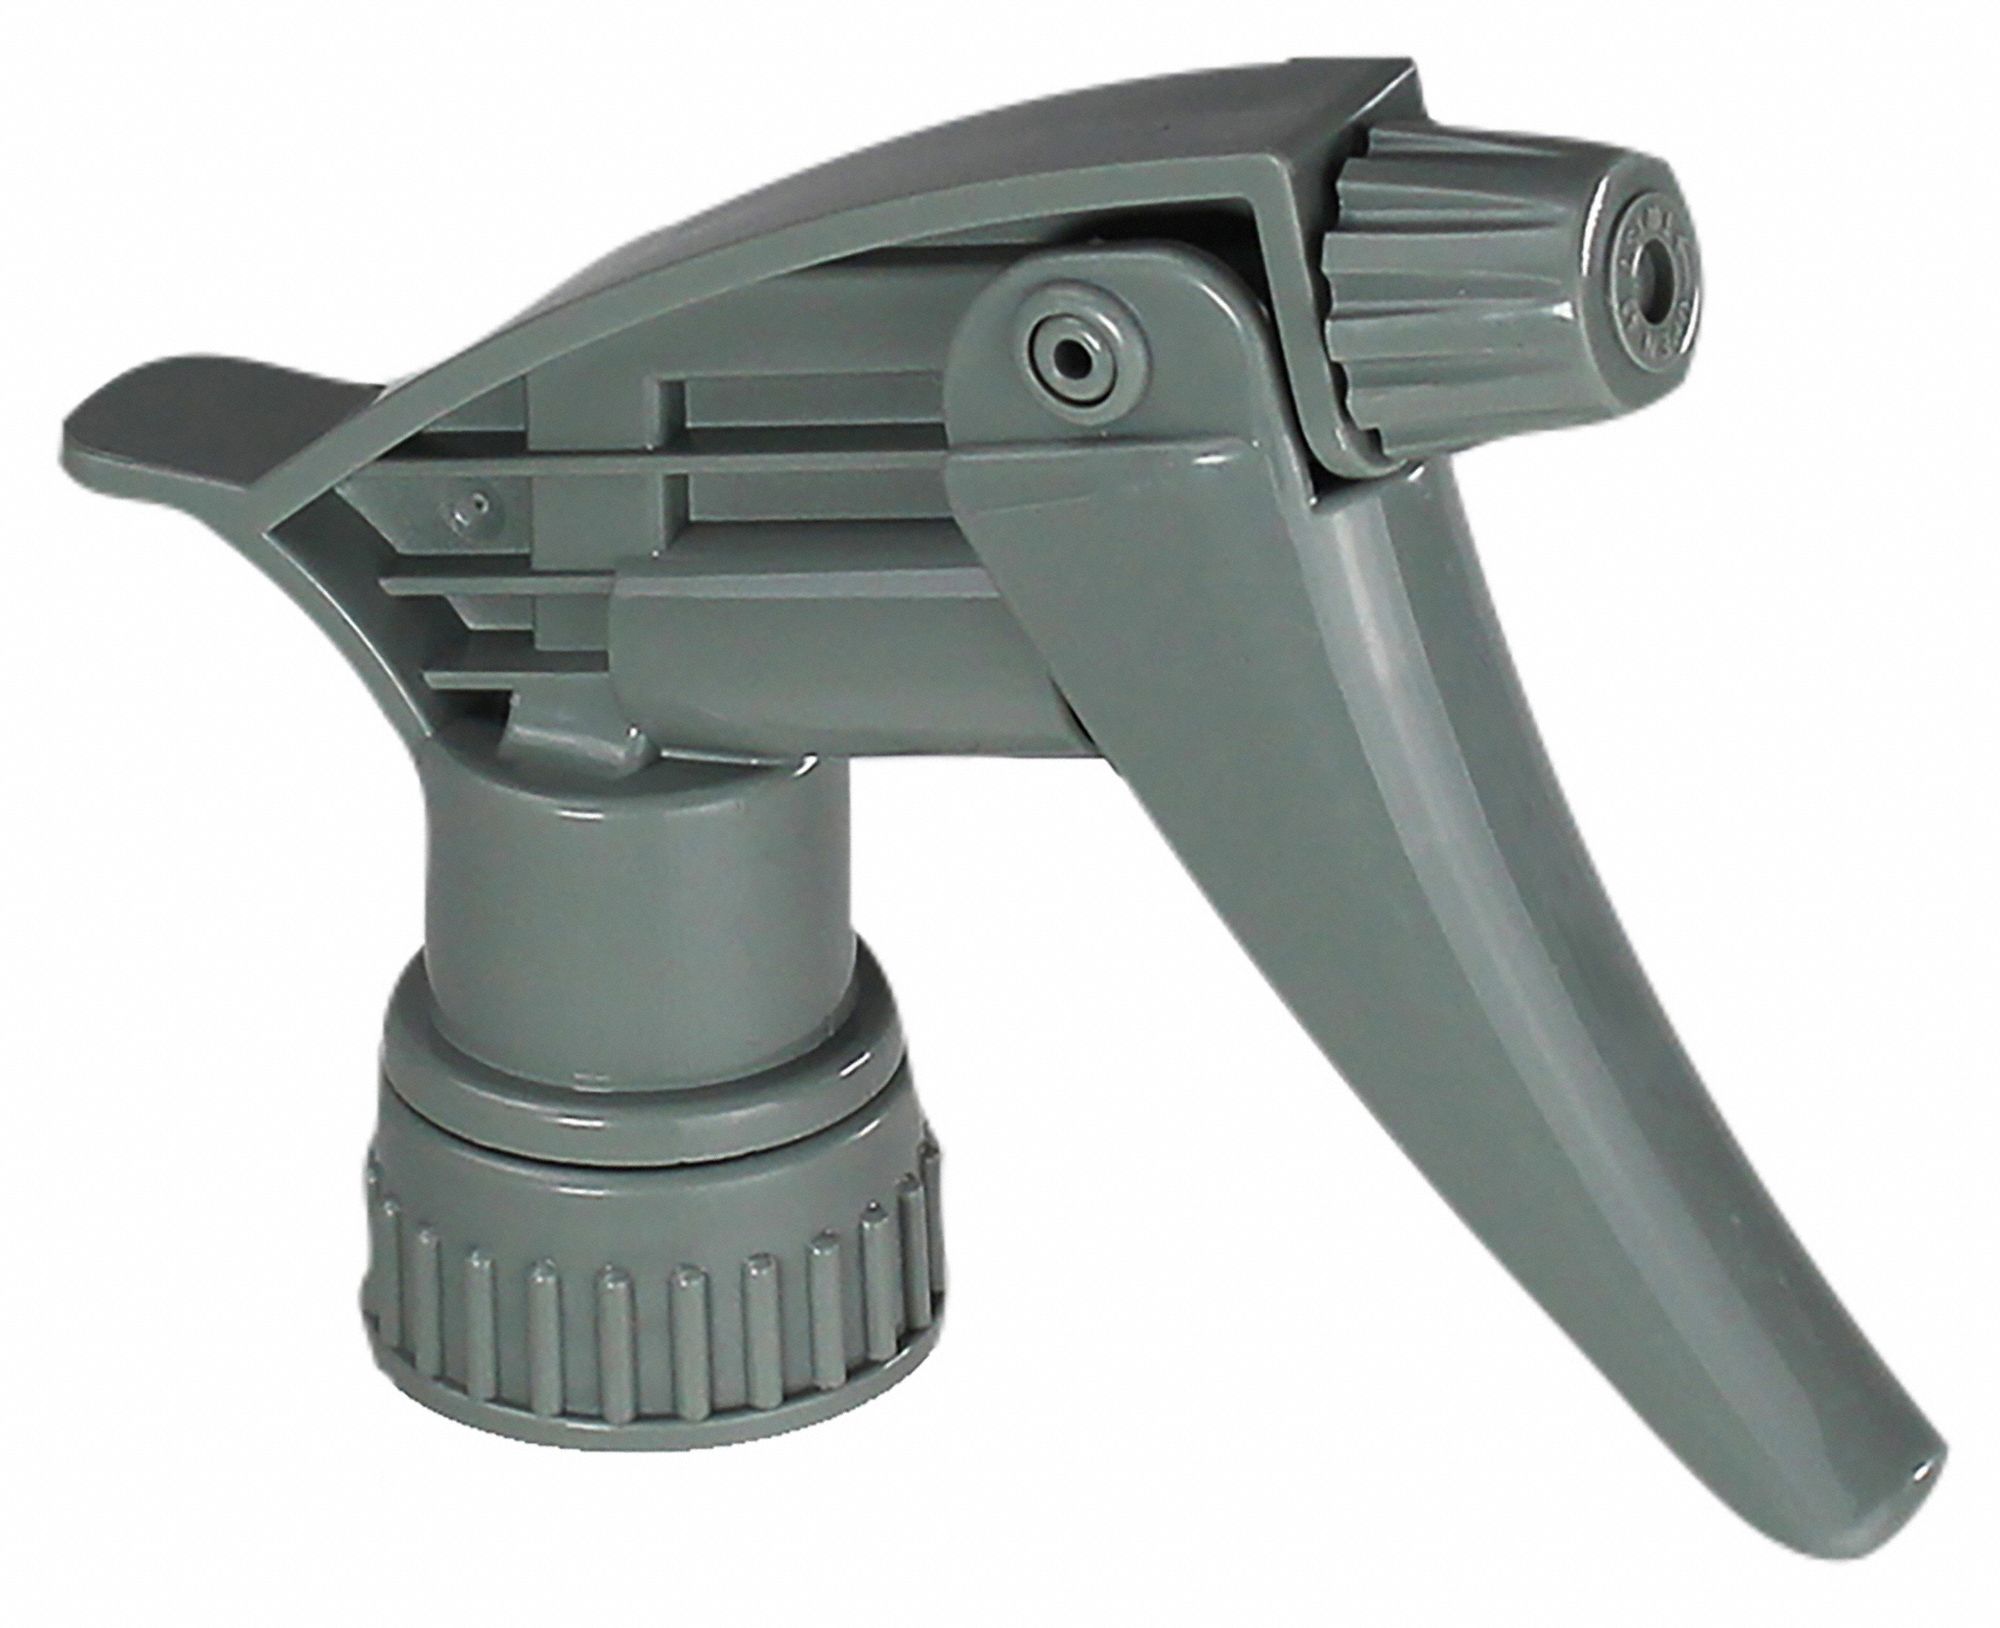 Grainger White/Green HDPE Trigger Spray Bottle, 32 oz, 3 PK, Quantity